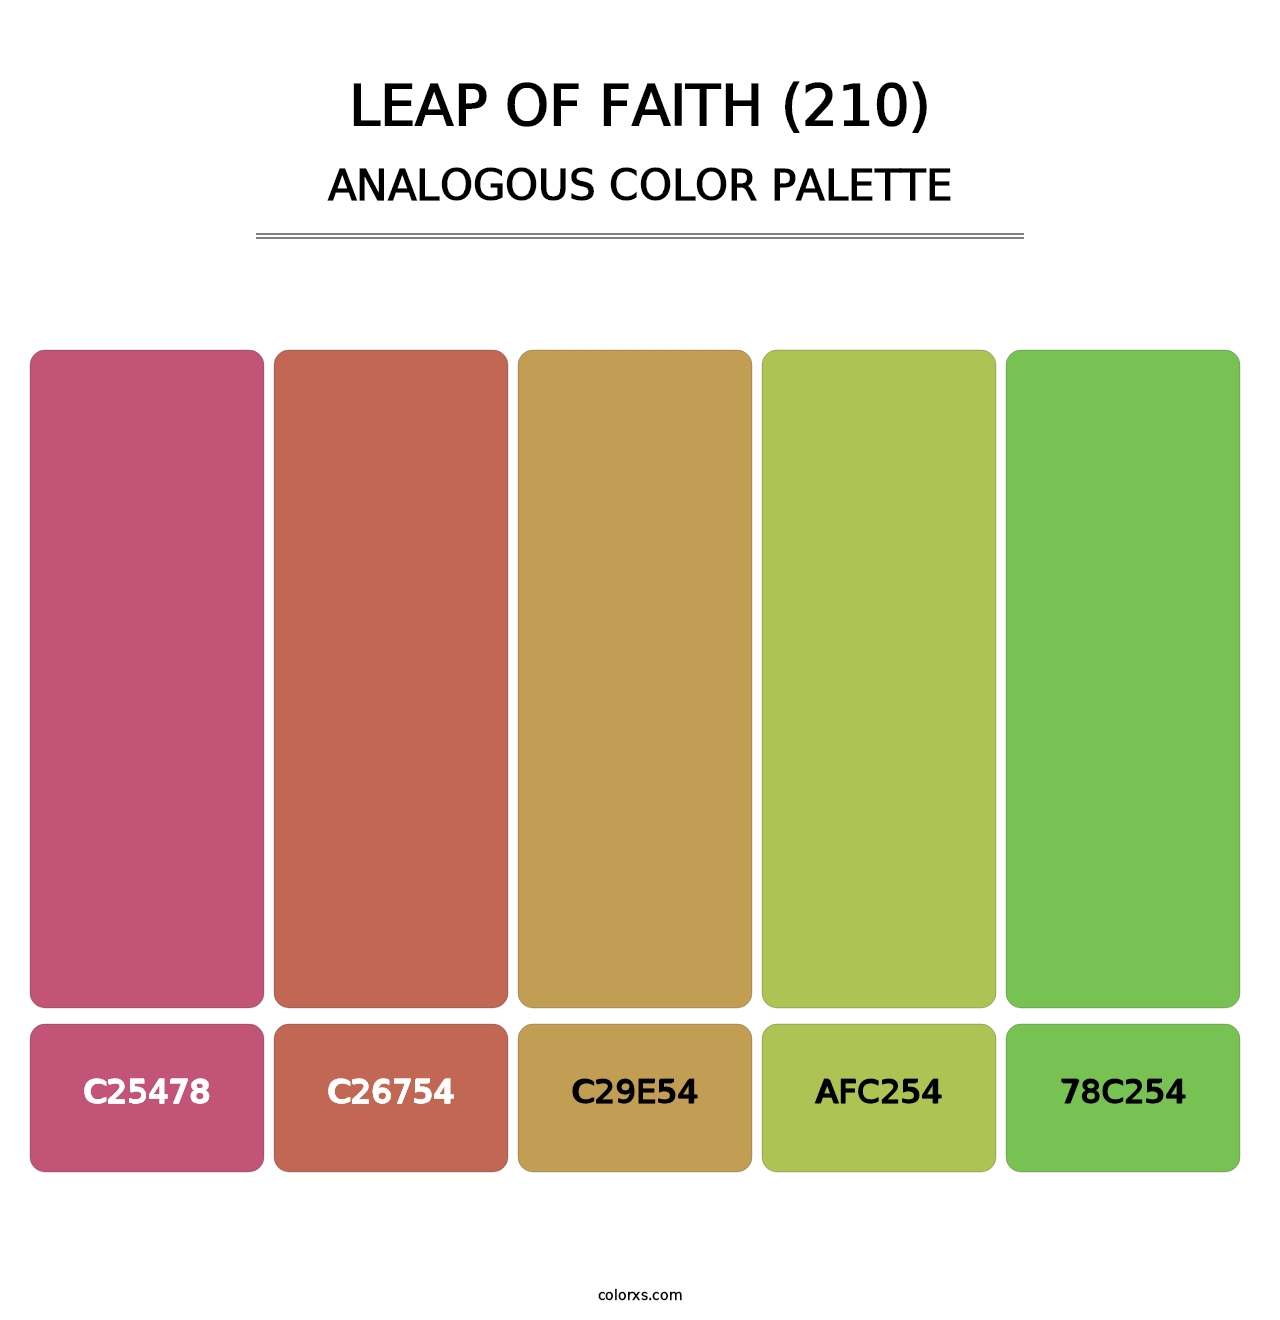 Leap of Faith (210) - Analogous Color Palette